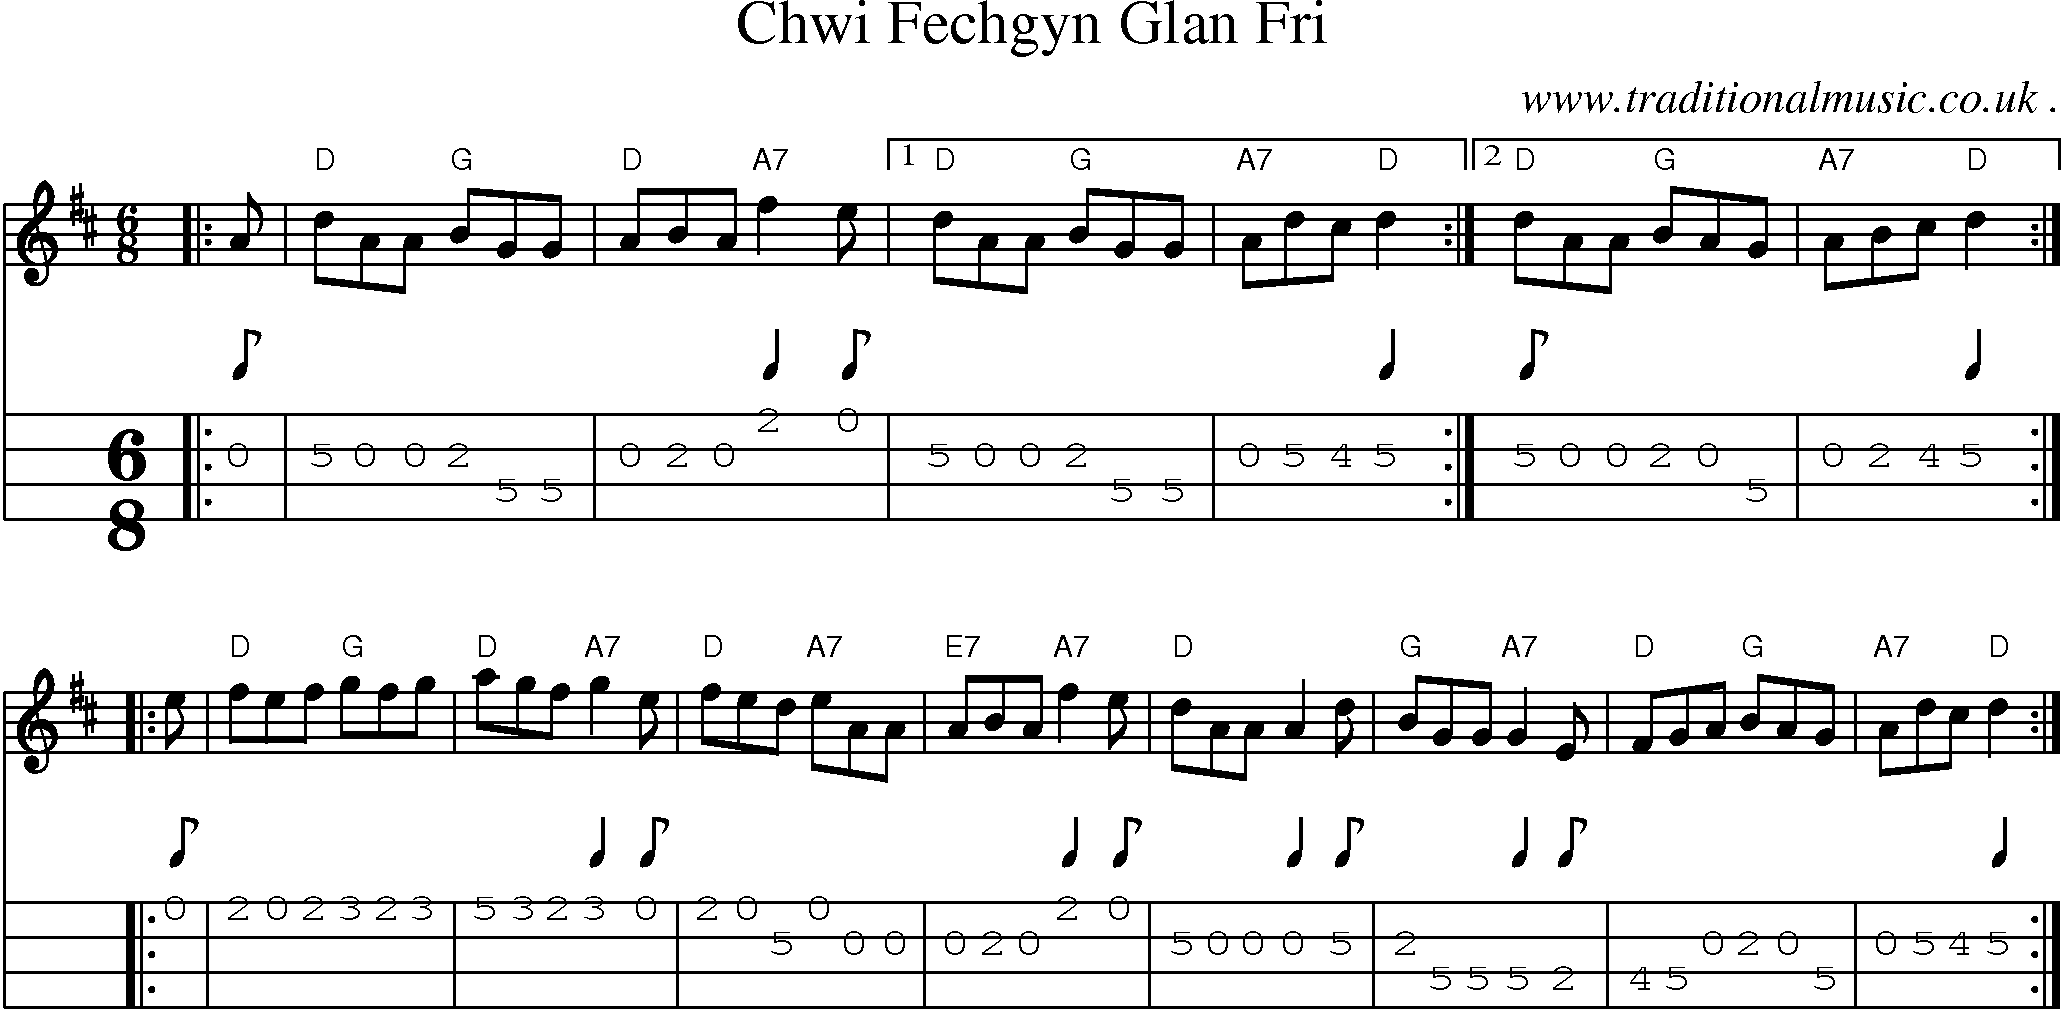 Sheet-music  score, Chords and Mandolin Tabs for Chwi Fechgyn Glan Fri